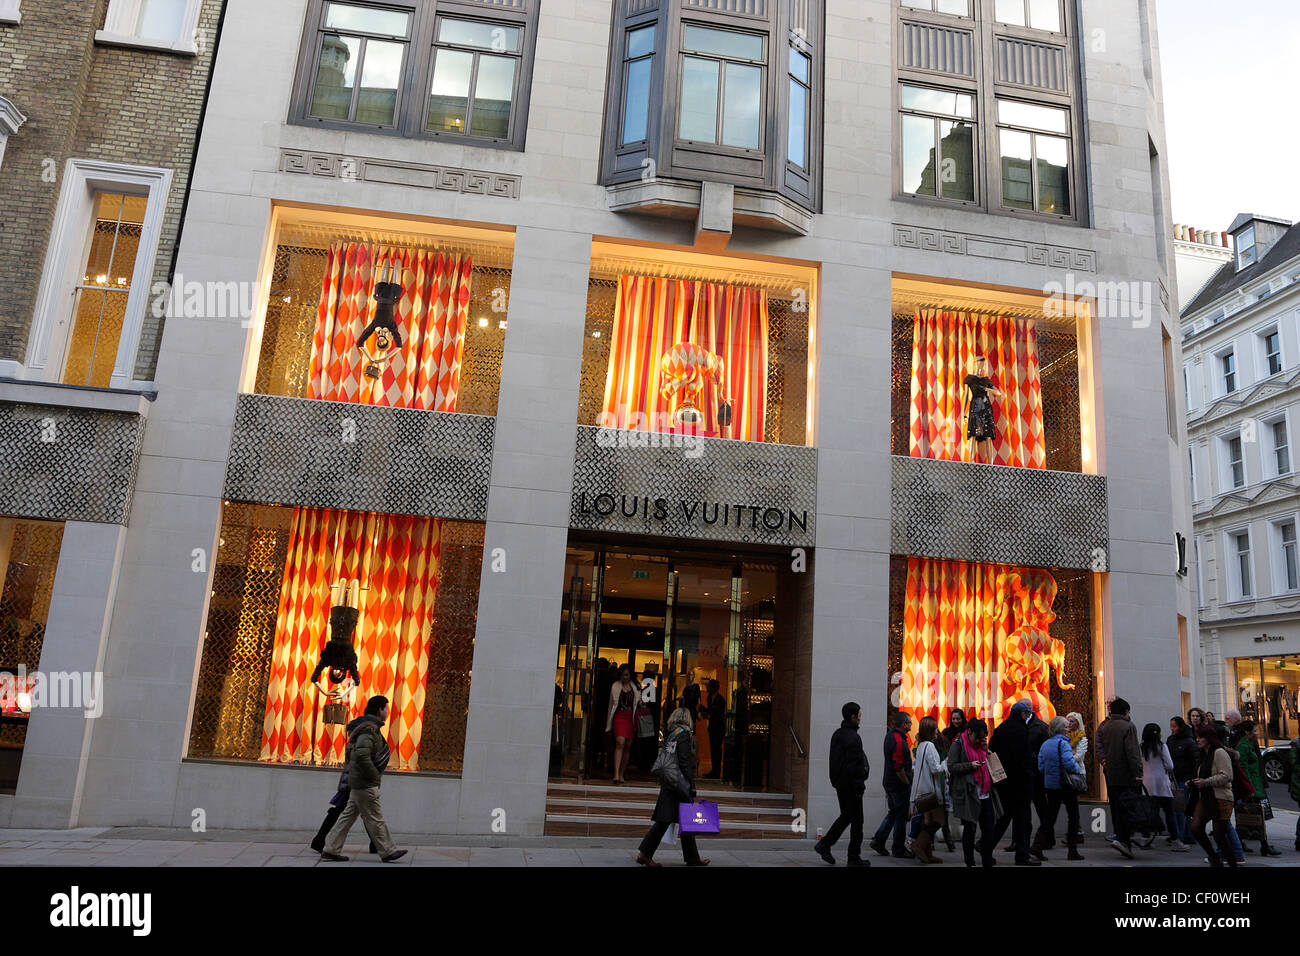 Louis Vuitton's New Bond Street Flagship Store – WWD